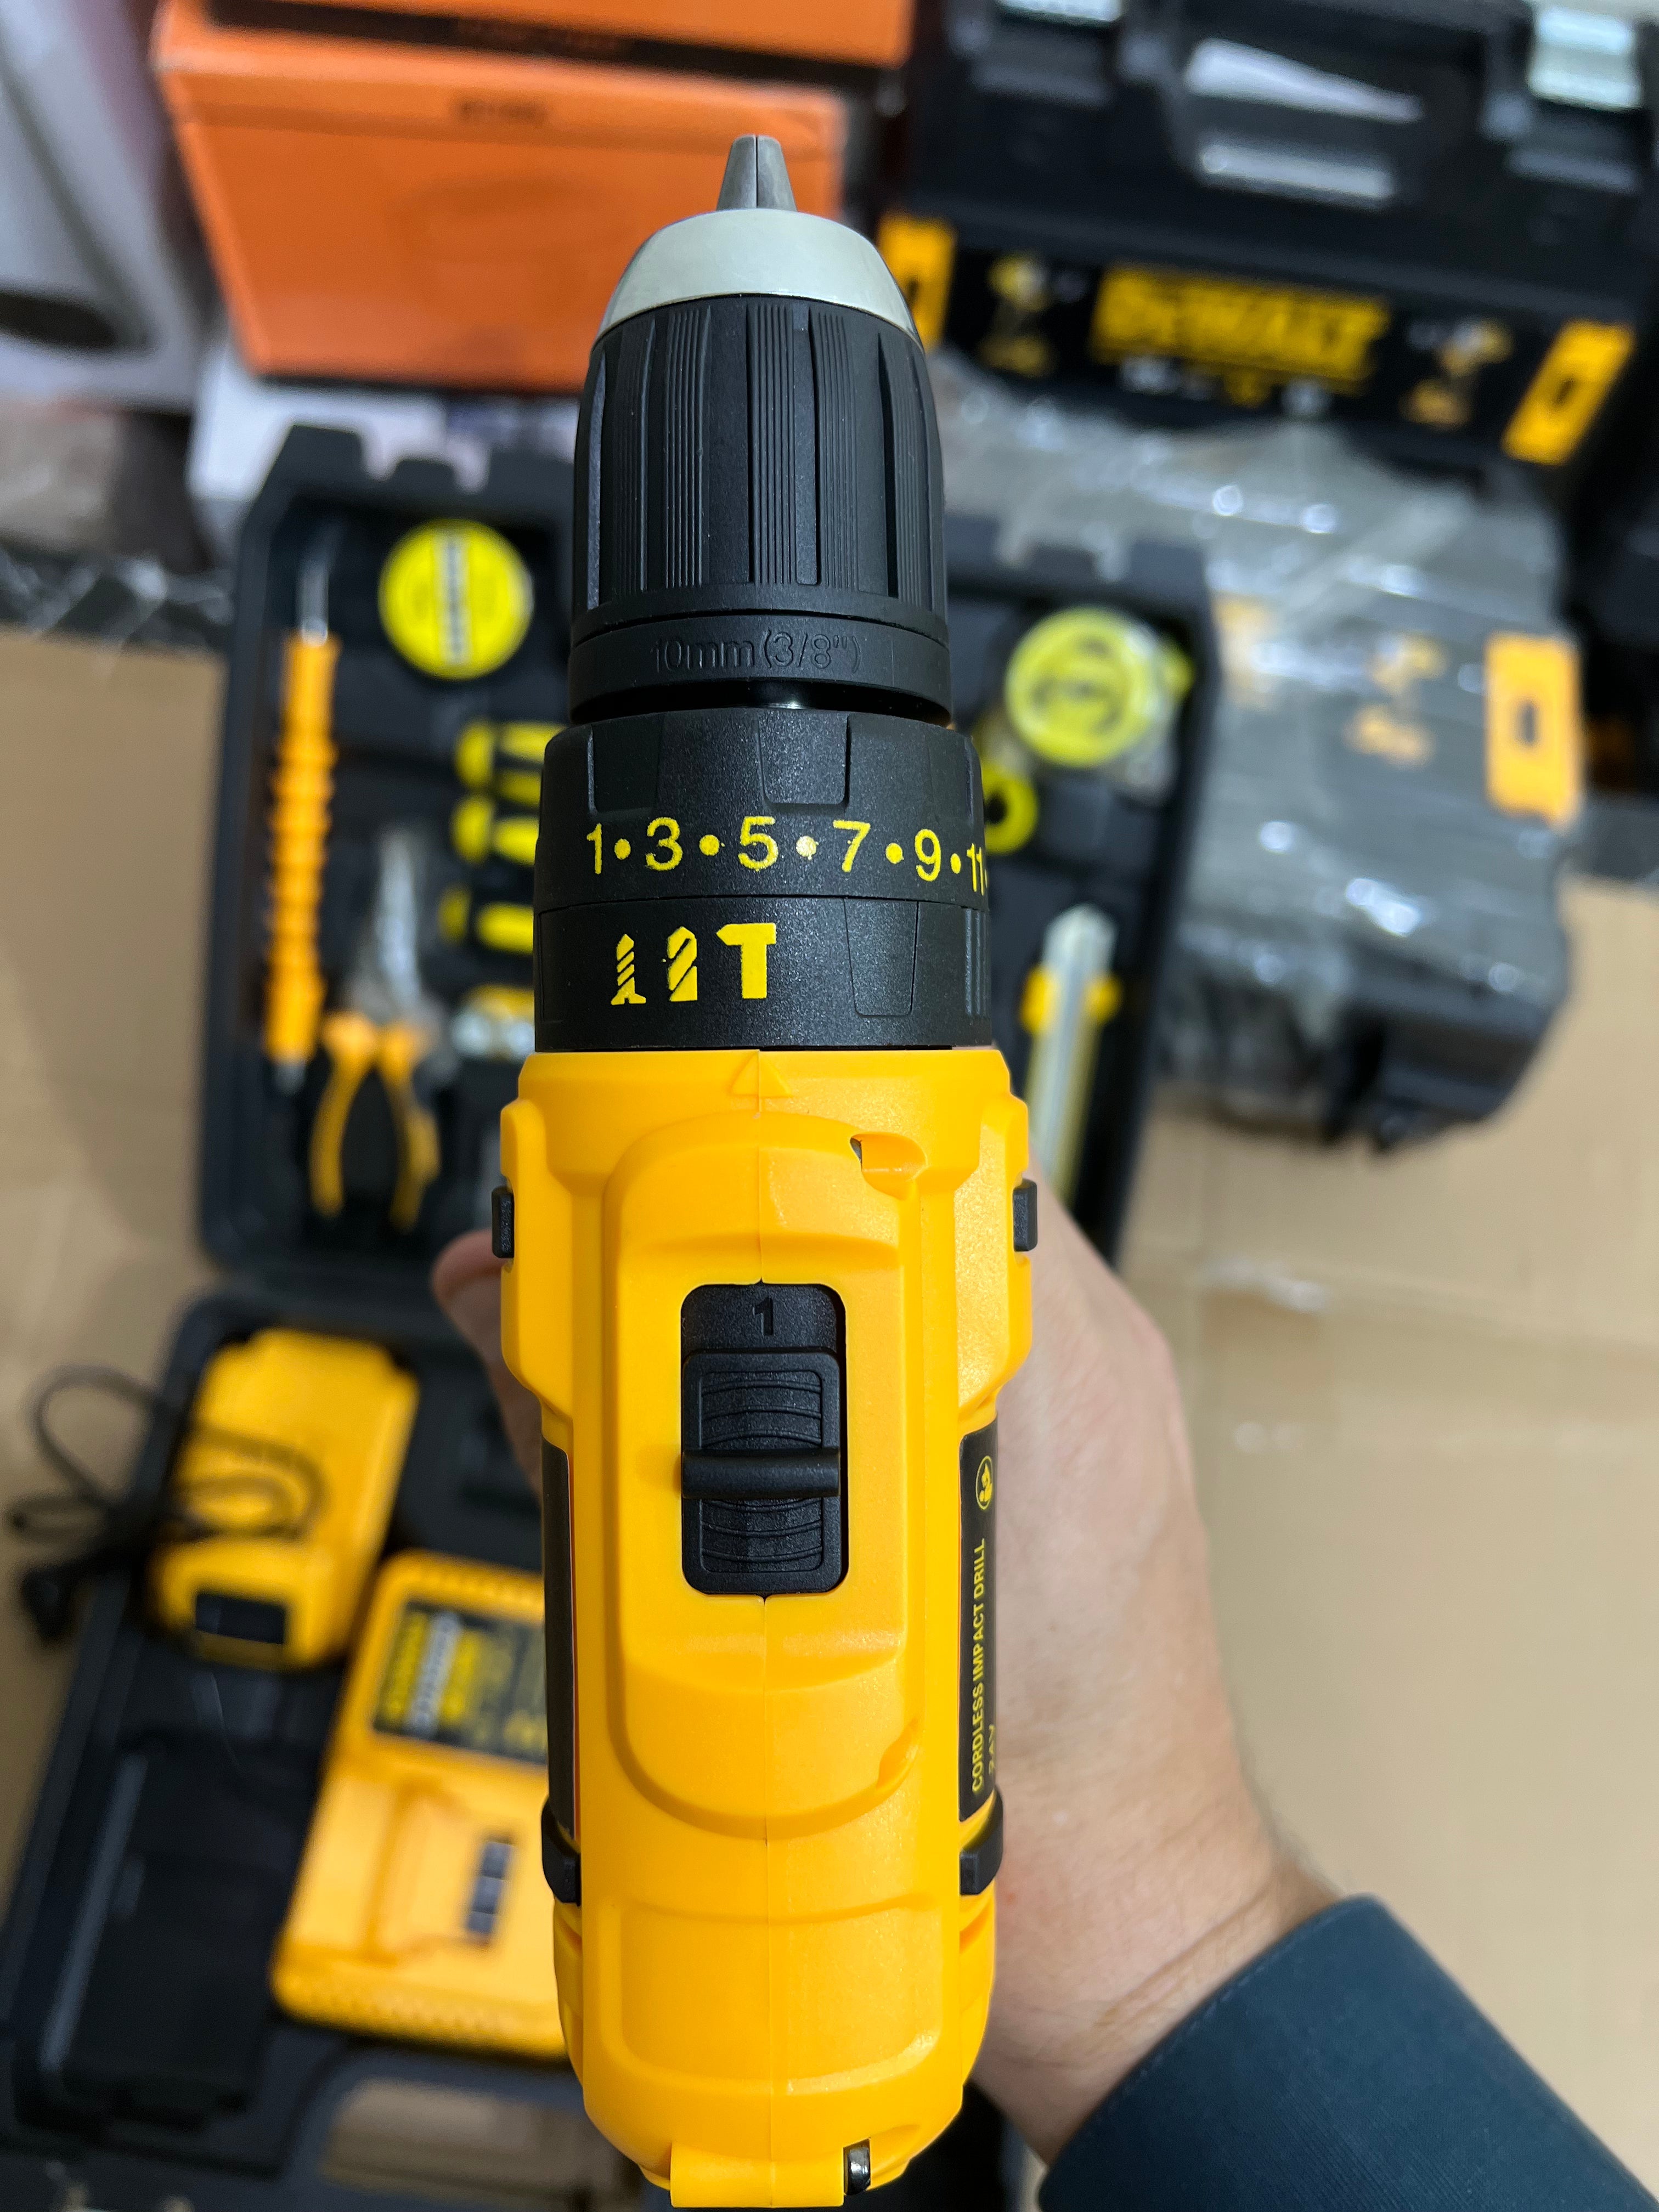 Dewalt 24v drill machine with tool kit set